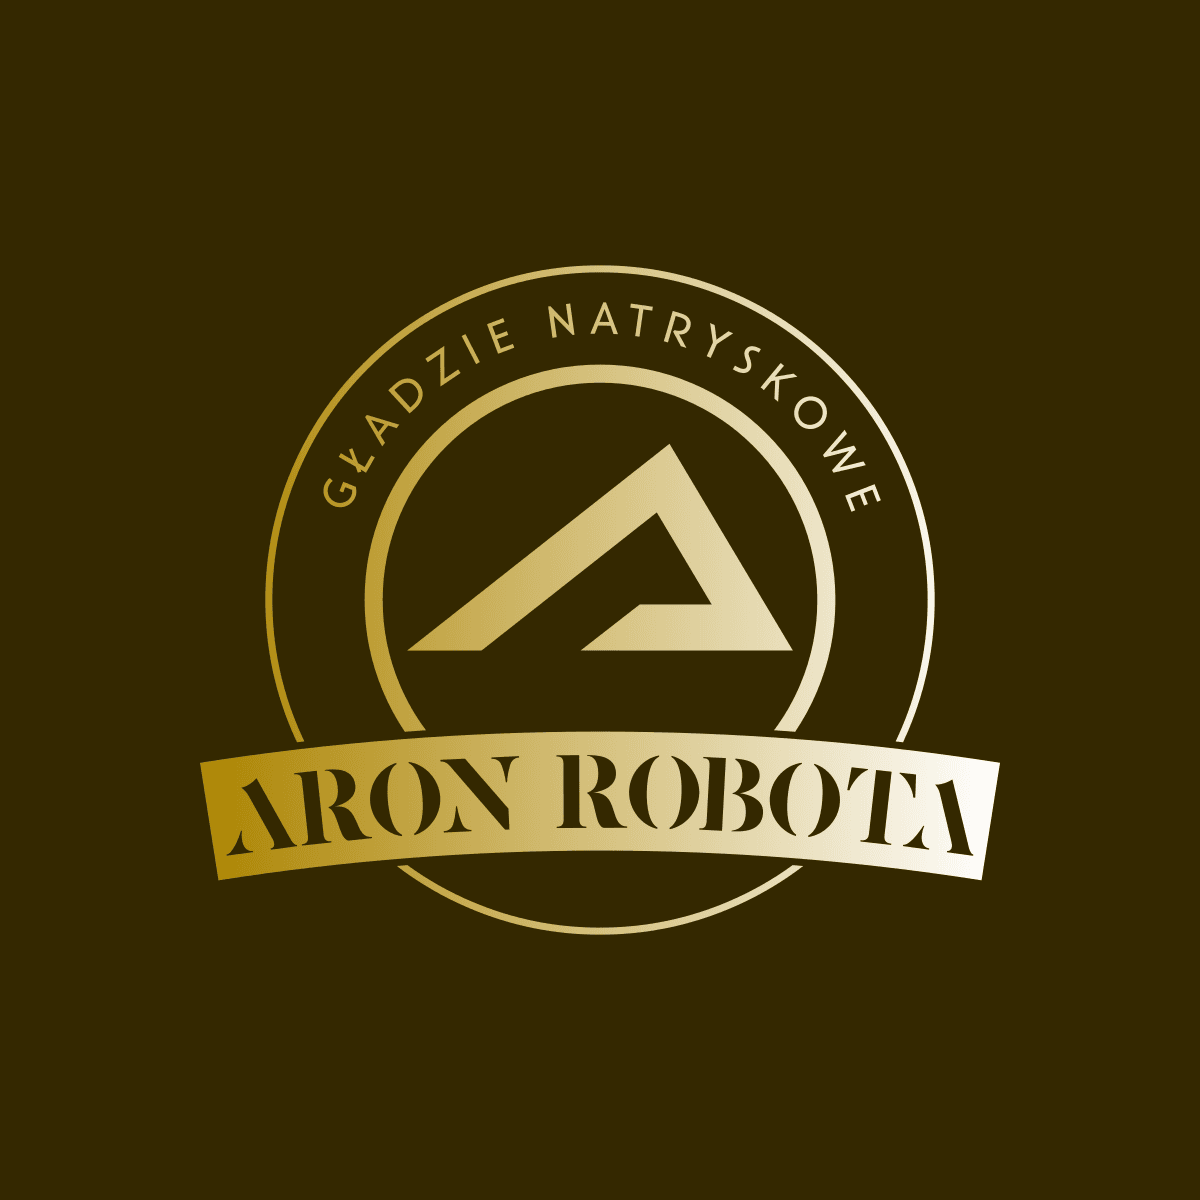 Aron Robota-logo